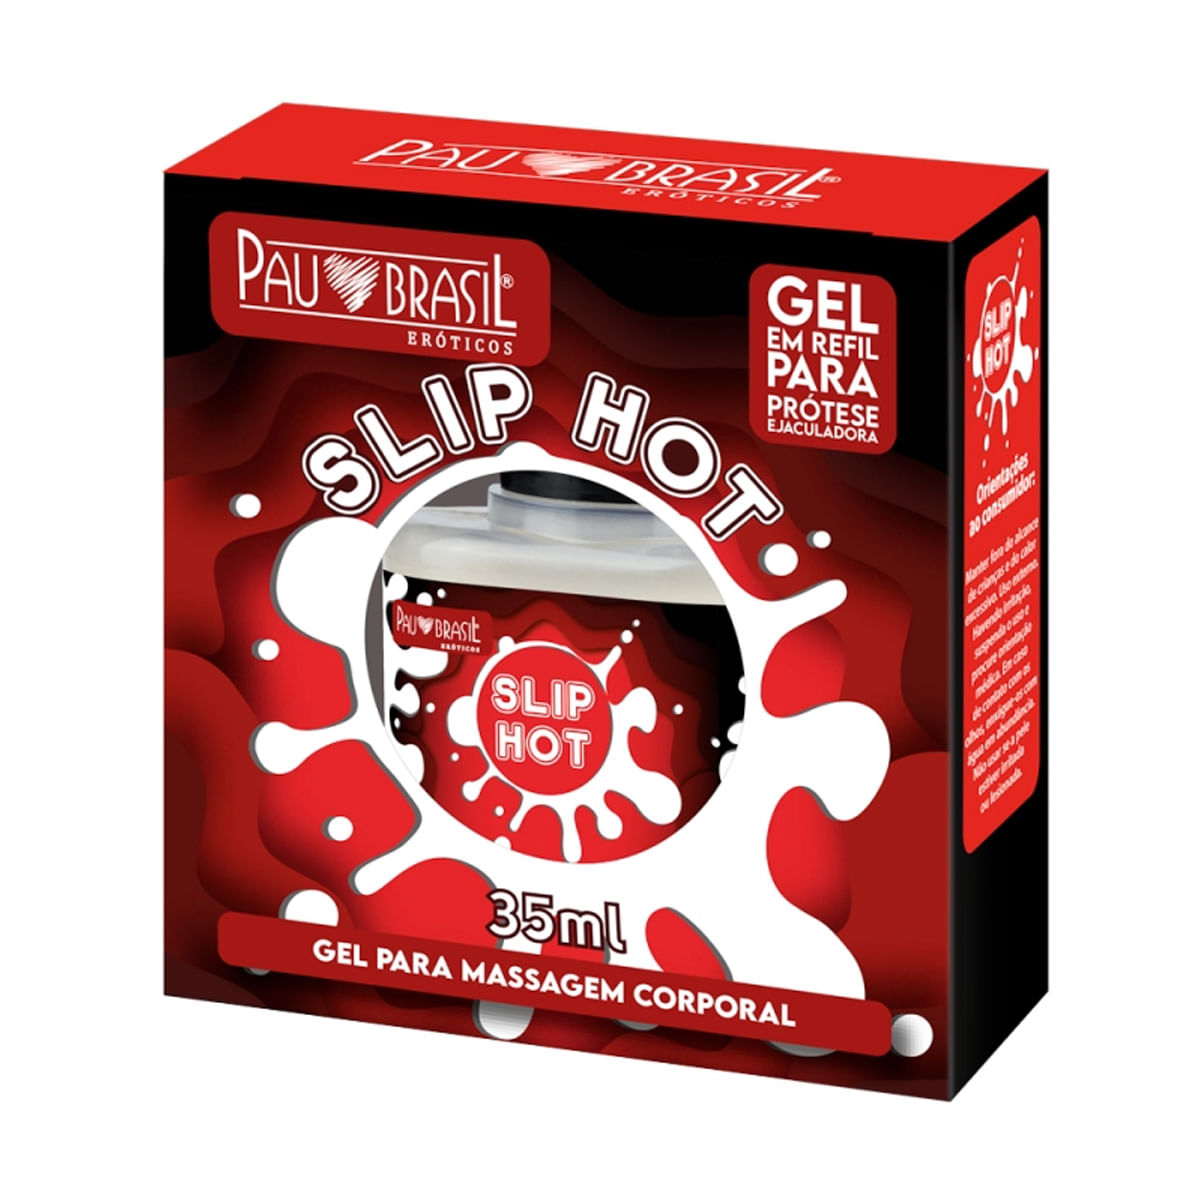 Slip Hot Gel em Refil para Prótese Ejaculadora 35ml Pau Brasil